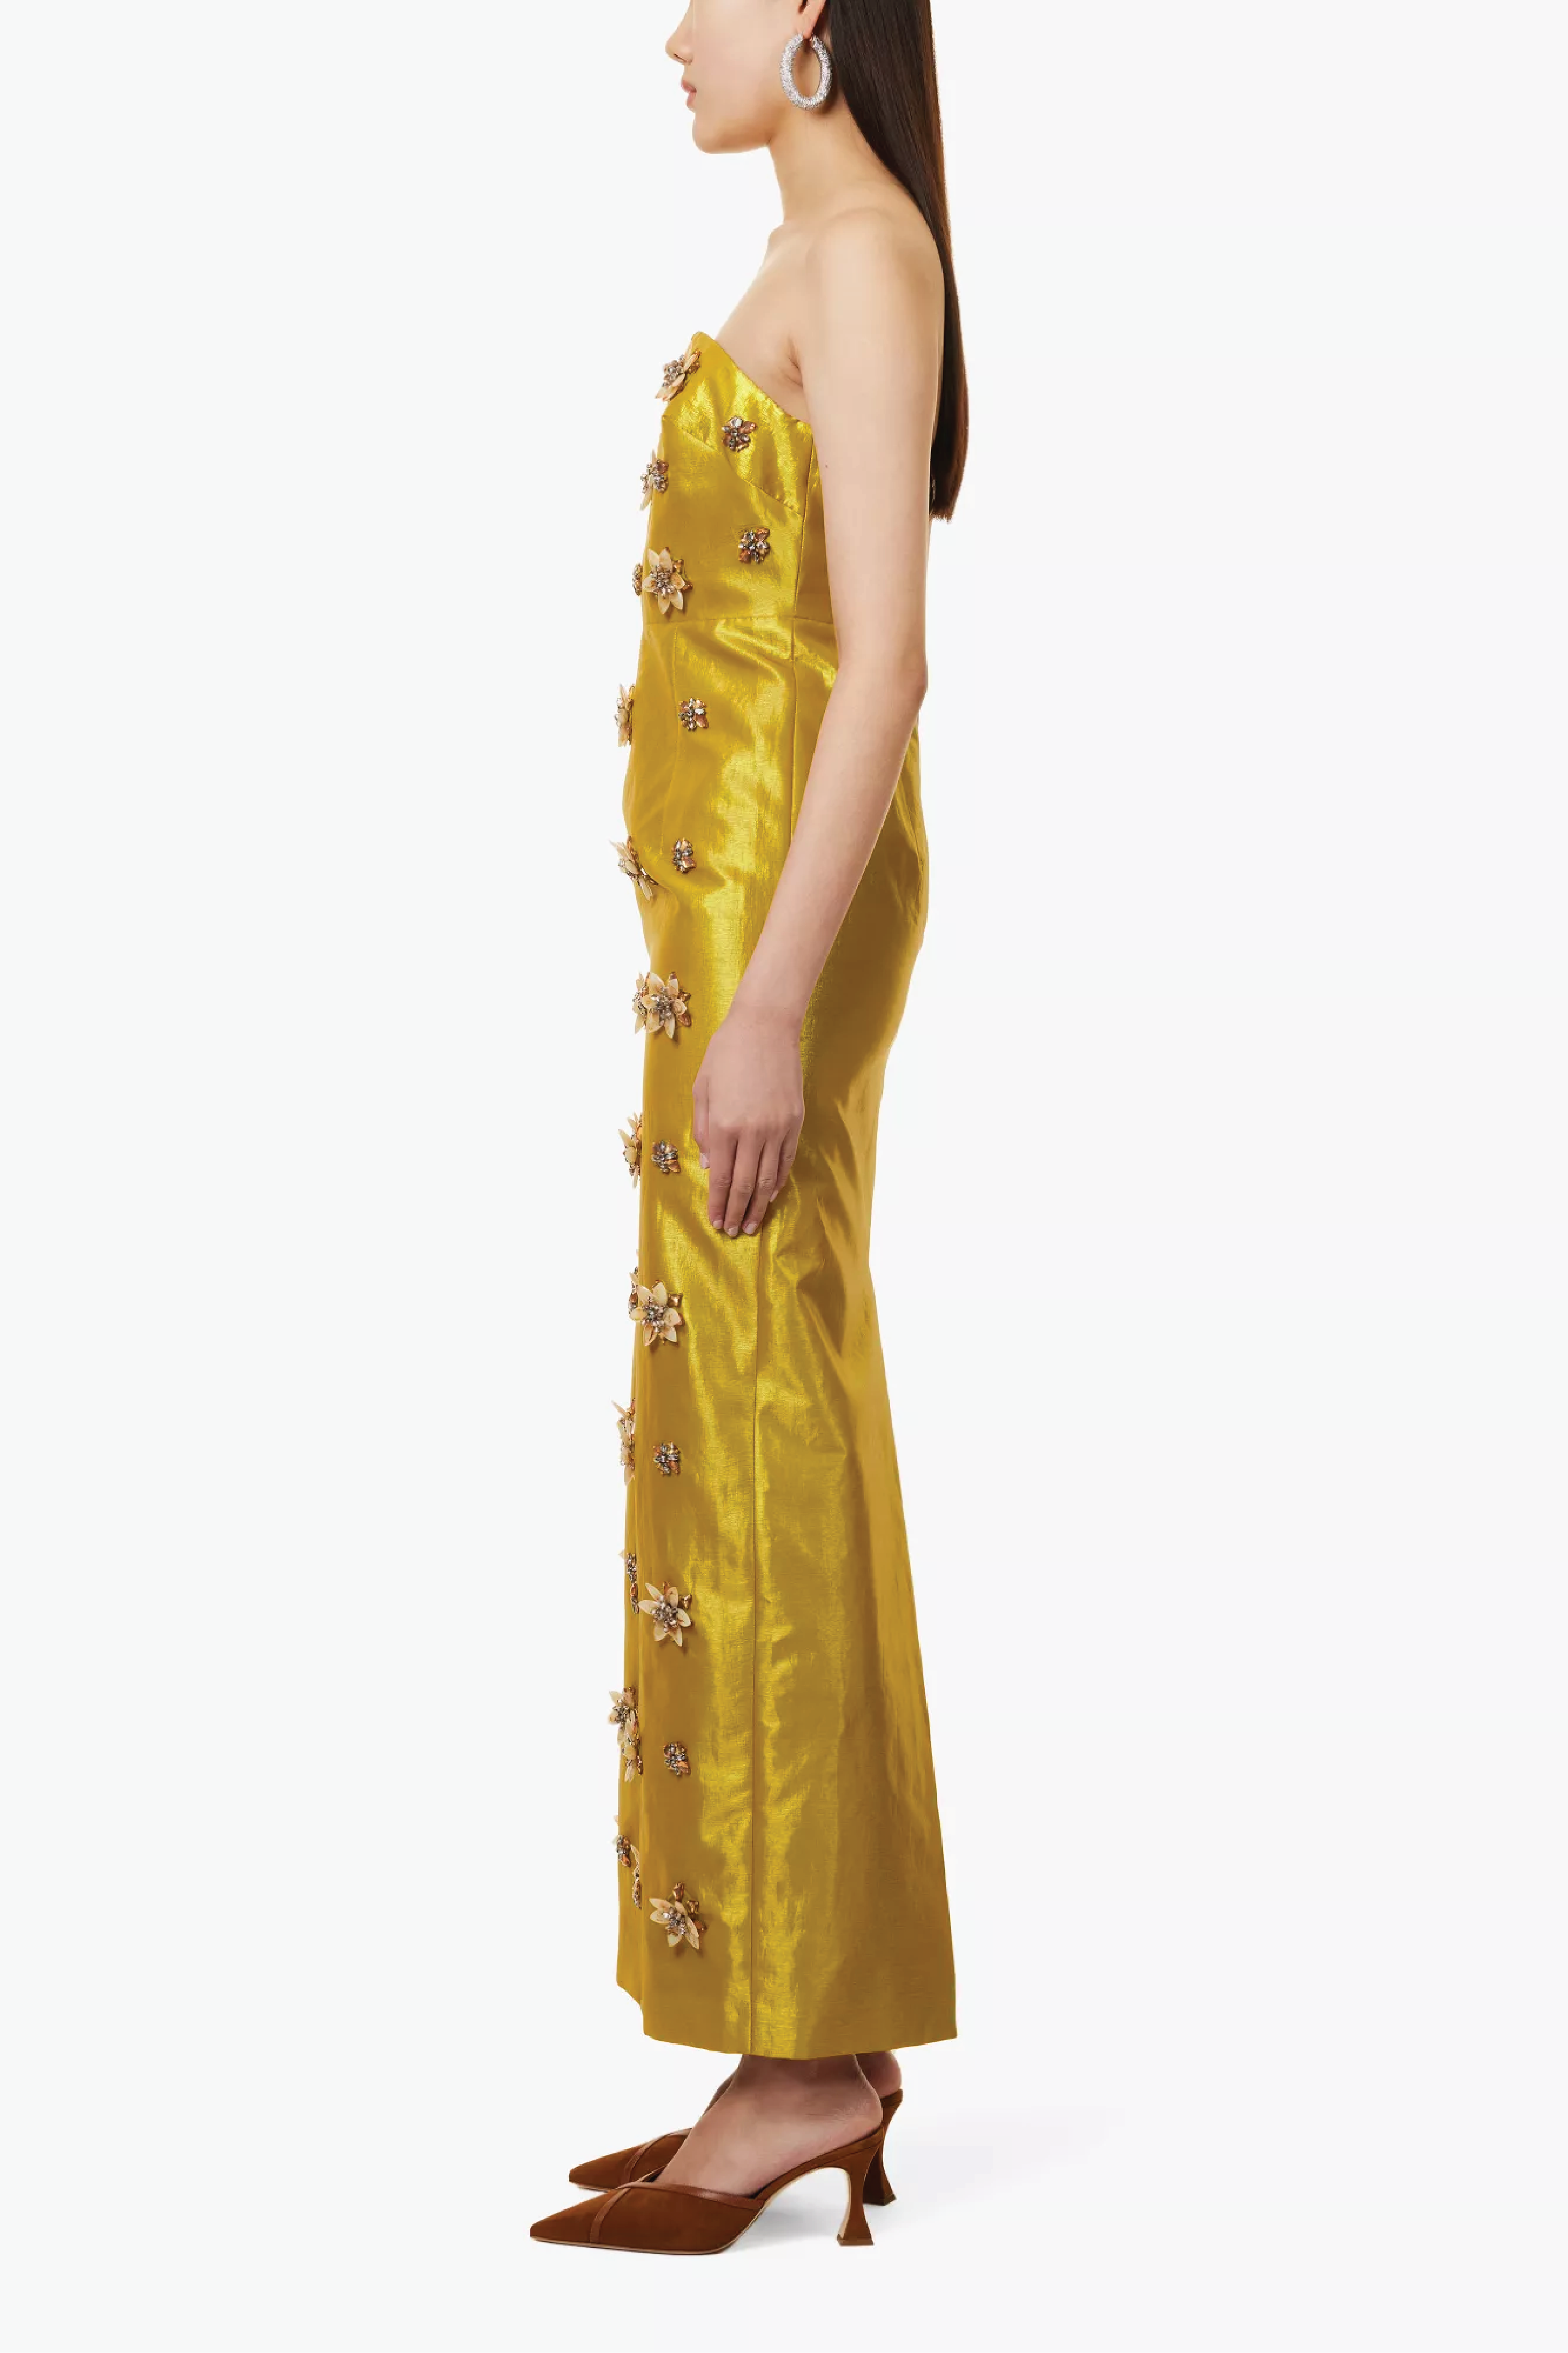 Lorena Dress Gold Embellished Metallic Taffeta